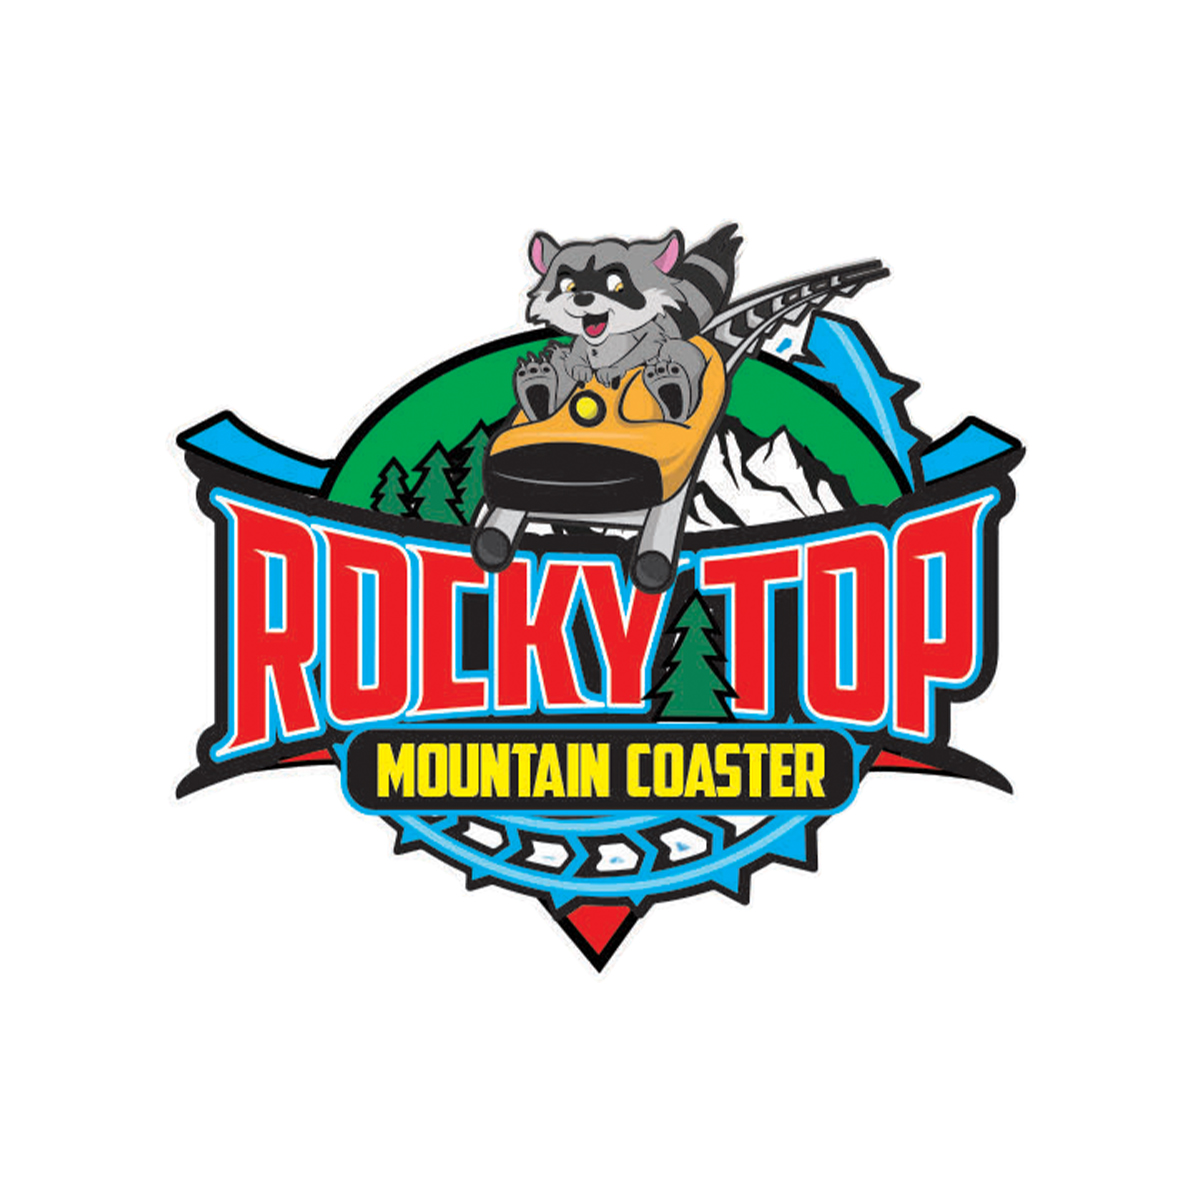 Rockytop Mountain Coaster SMCB Logo.jpg